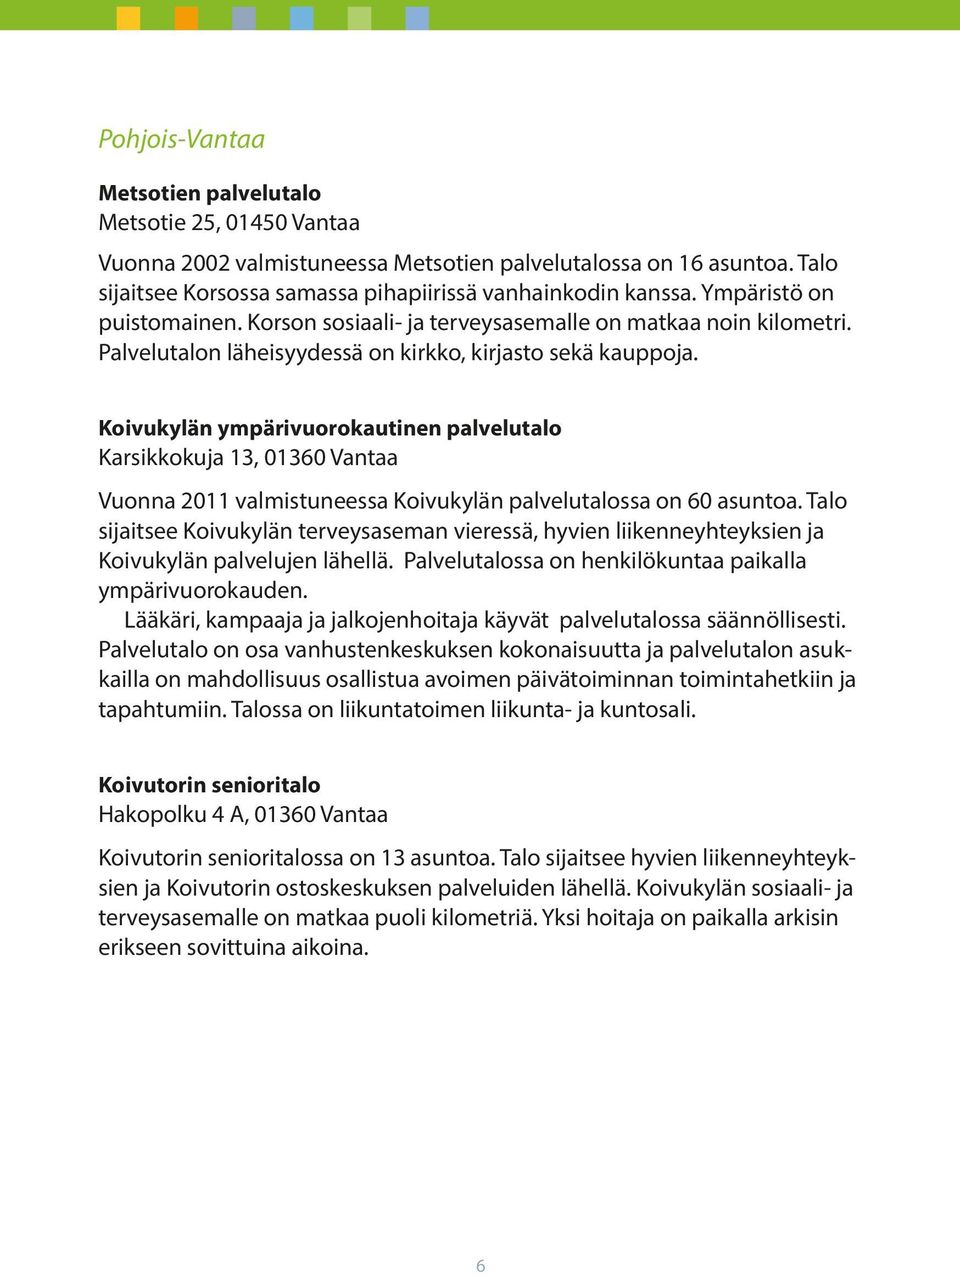 Koivukylän ympärivuorokautinen palvelutalo Karsikkokuja 13, 01360 Vantaa Vuonna 2011 valmistuneessa Koivukylän palvelutalossa on 60 asuntoa.